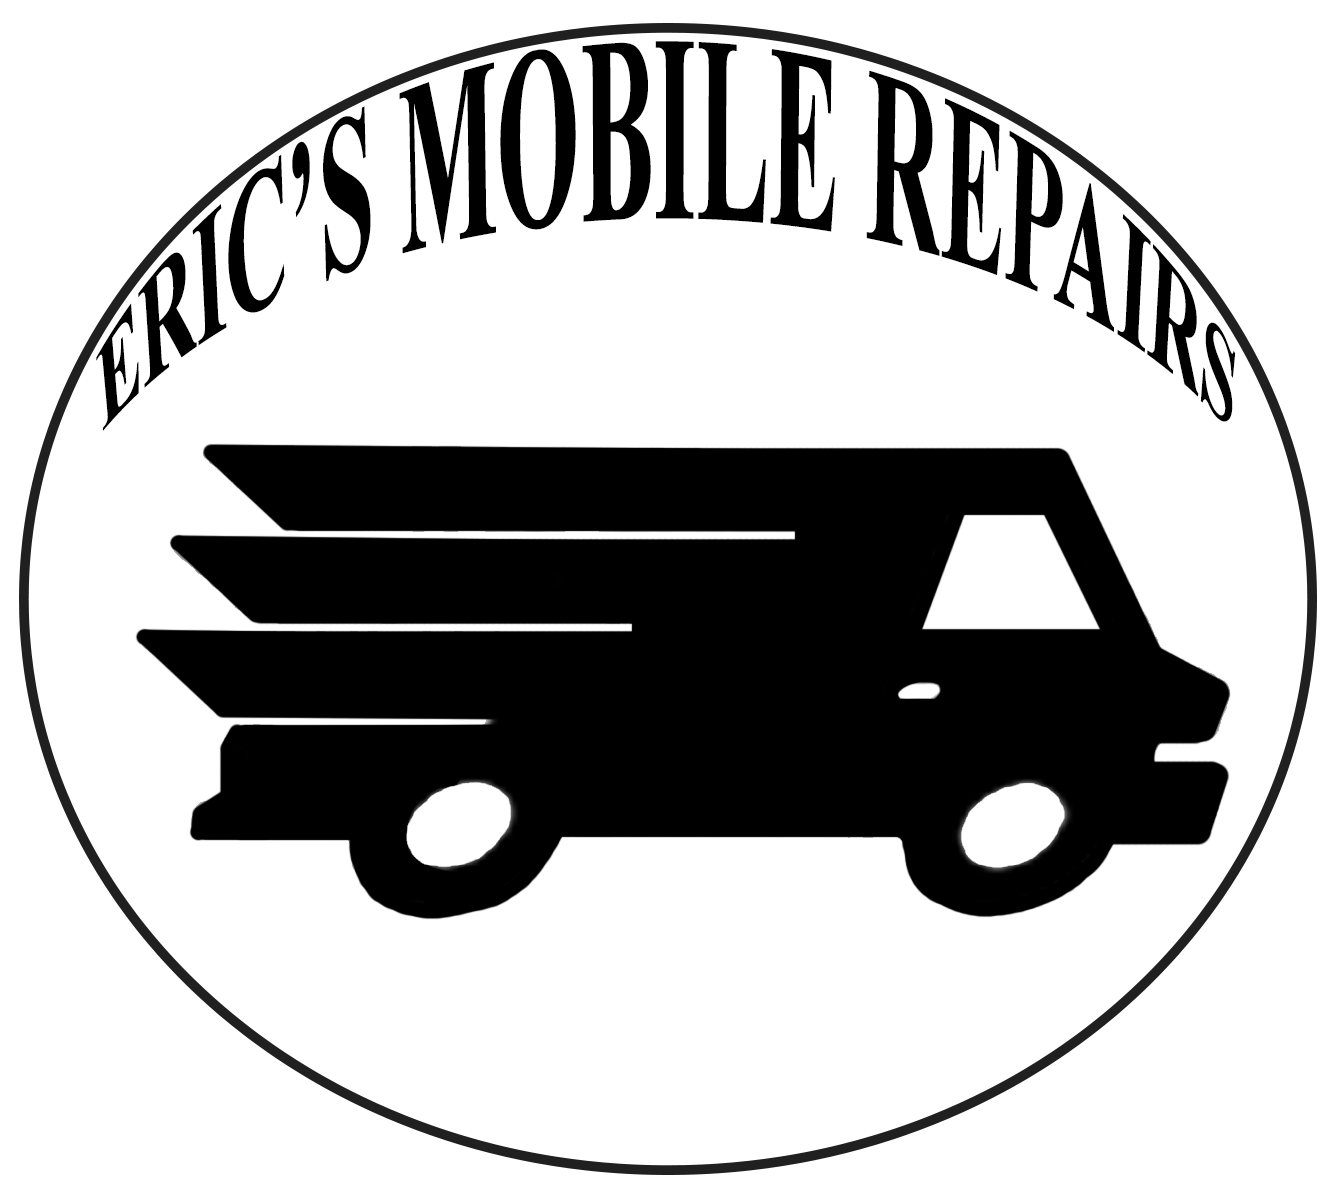 eric's mobile repair